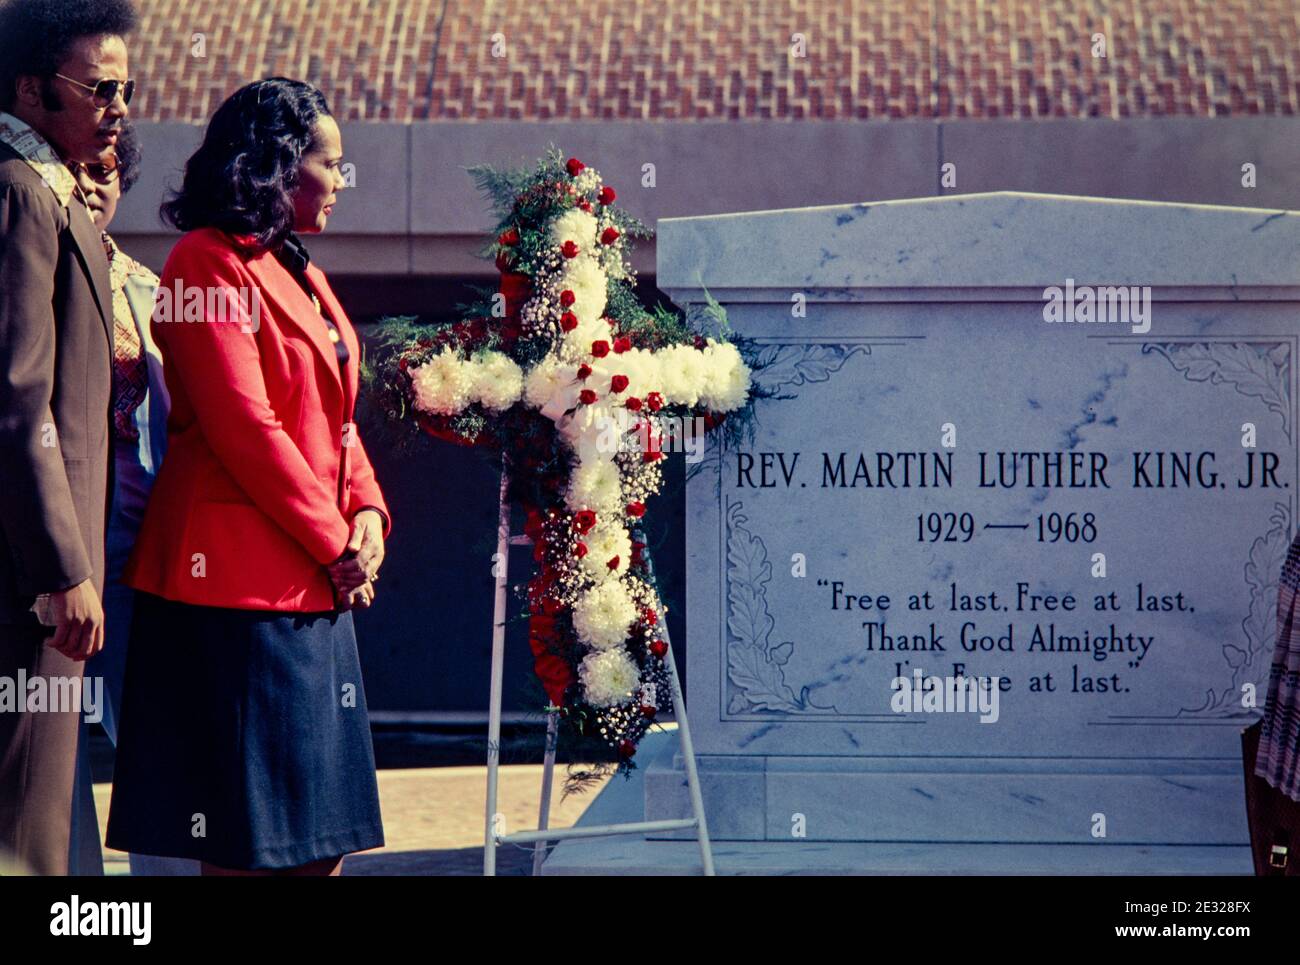 Coretta Scott King, vedova del leader dei diritti civili ucciso, Dr. Martin Luther King, Jr., presso la tomba di suo marito al King Center di Atlanta, Georgia. Foto Stock